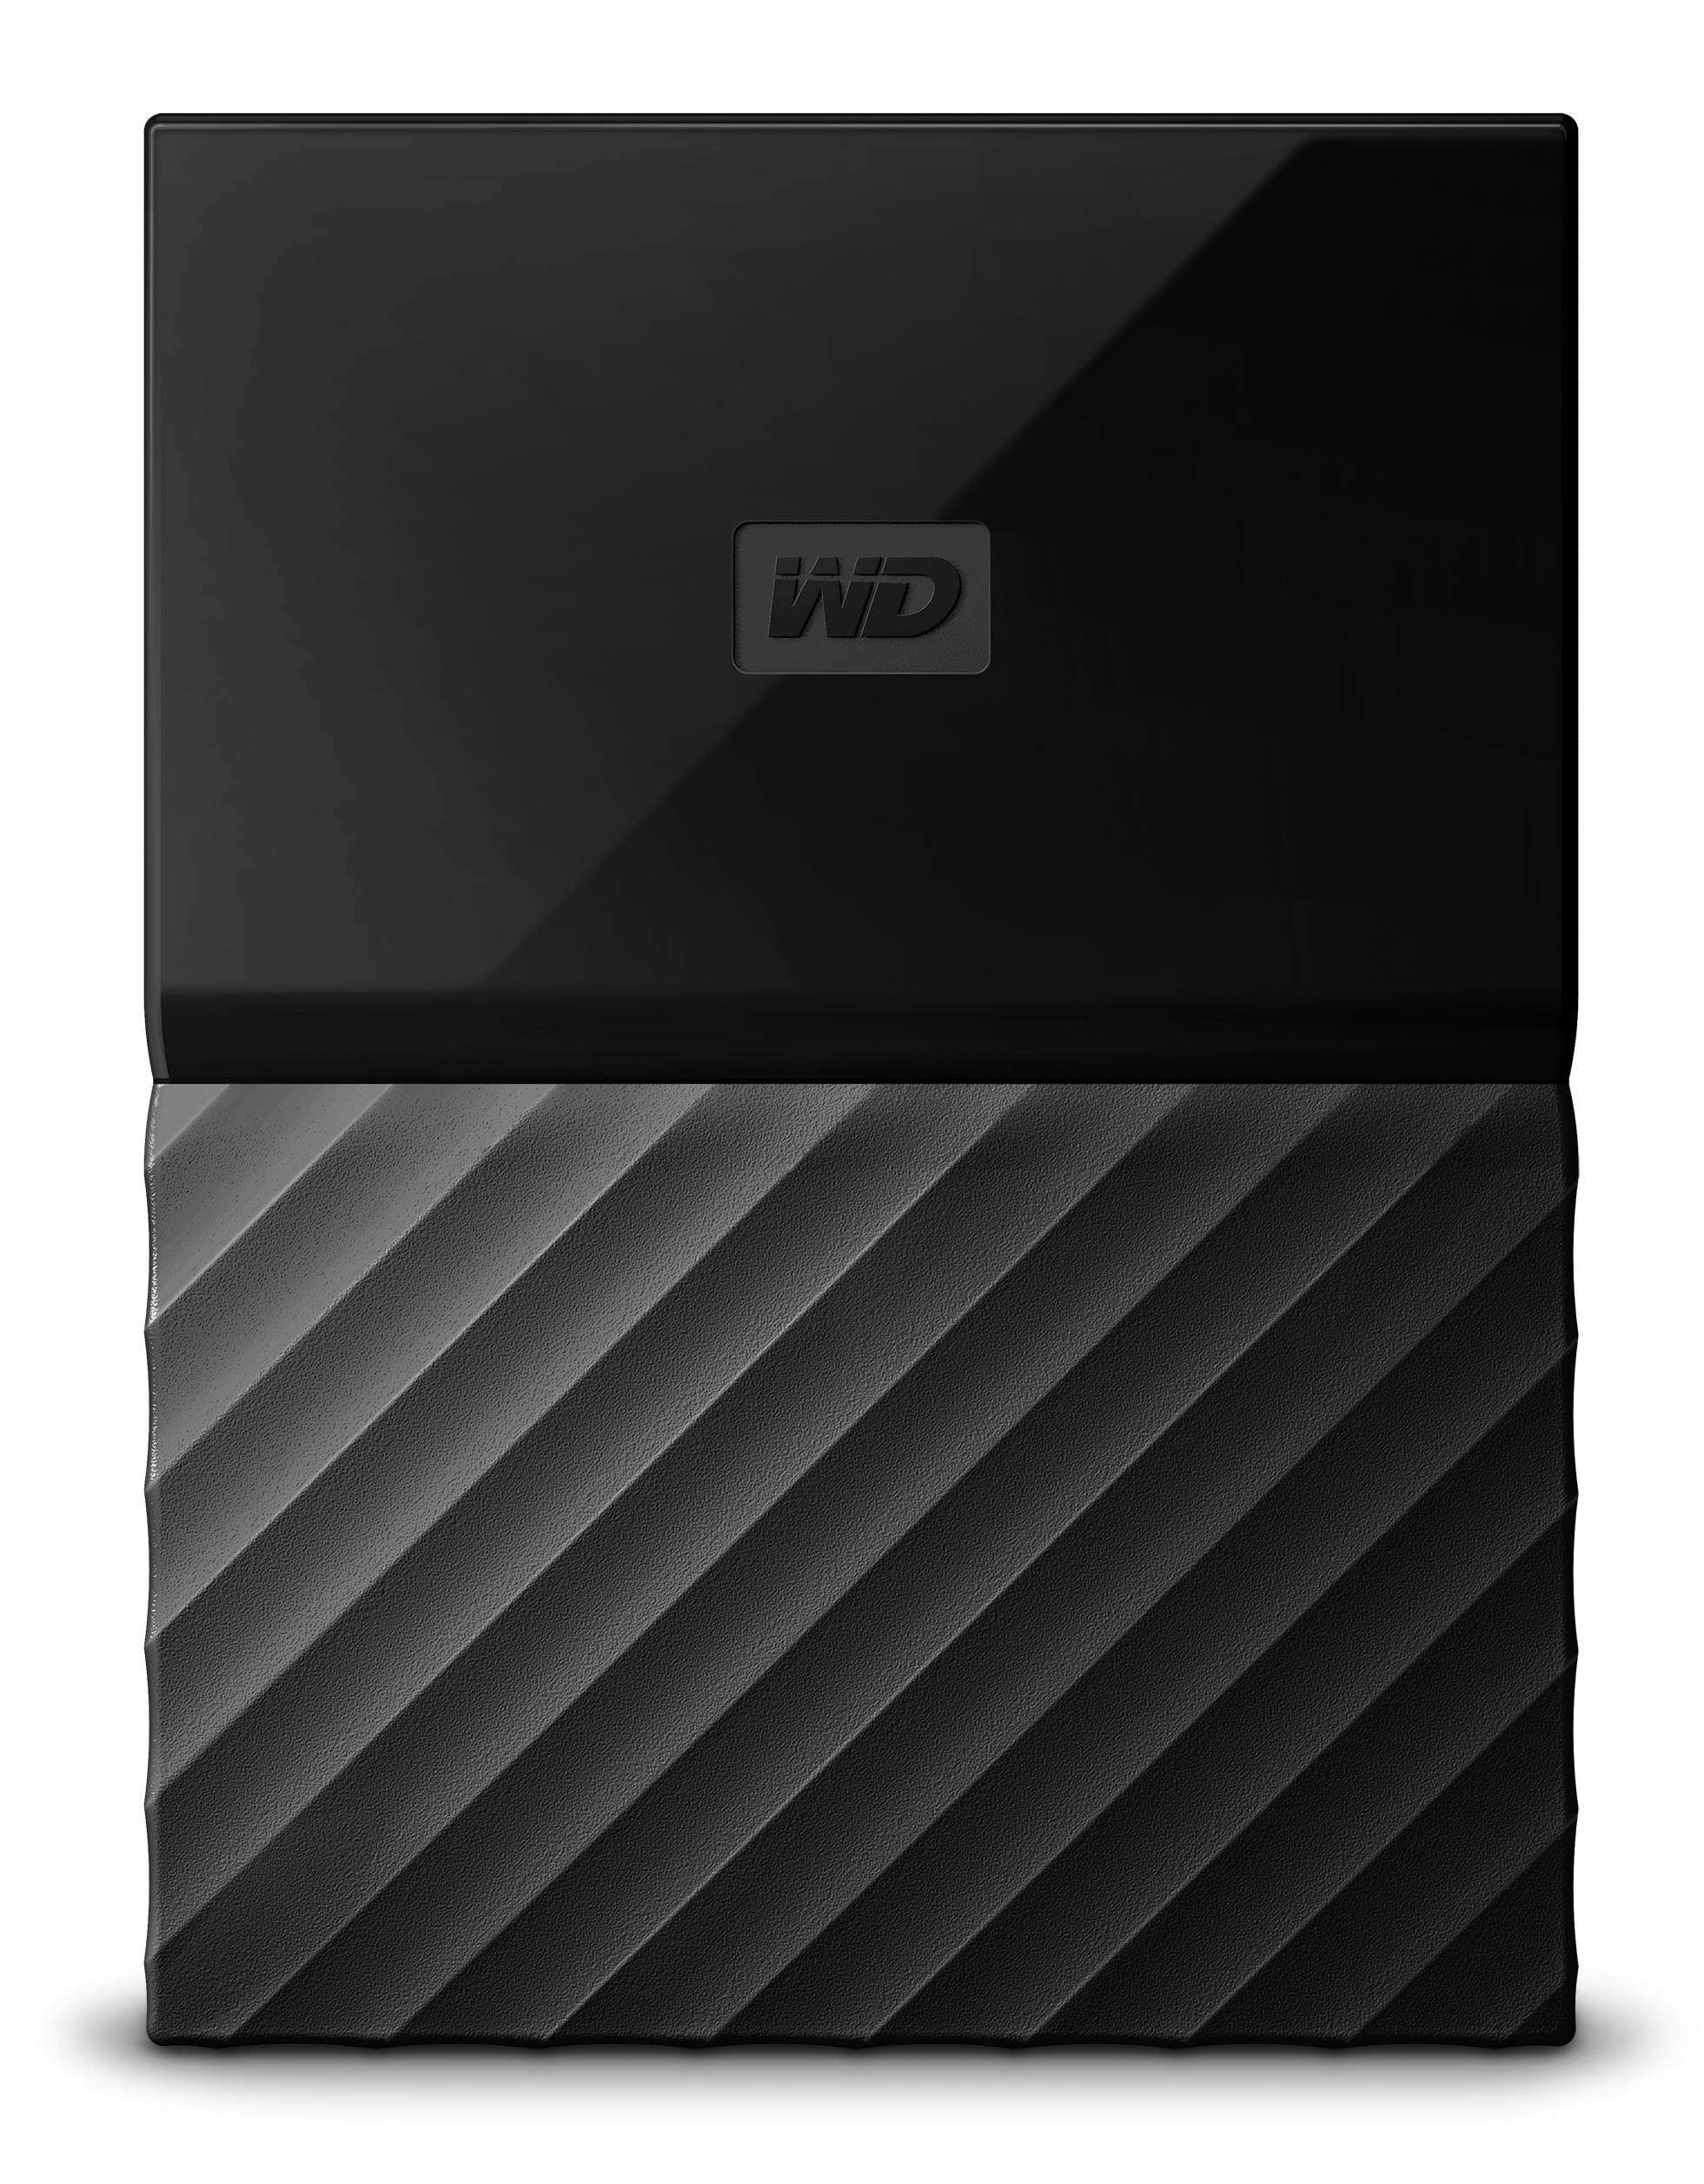 قرص صلب ماي باسبورت 2 تيرا بايت أسود اللون مناسب لأجهزة ماك من وسترن ديجيتال